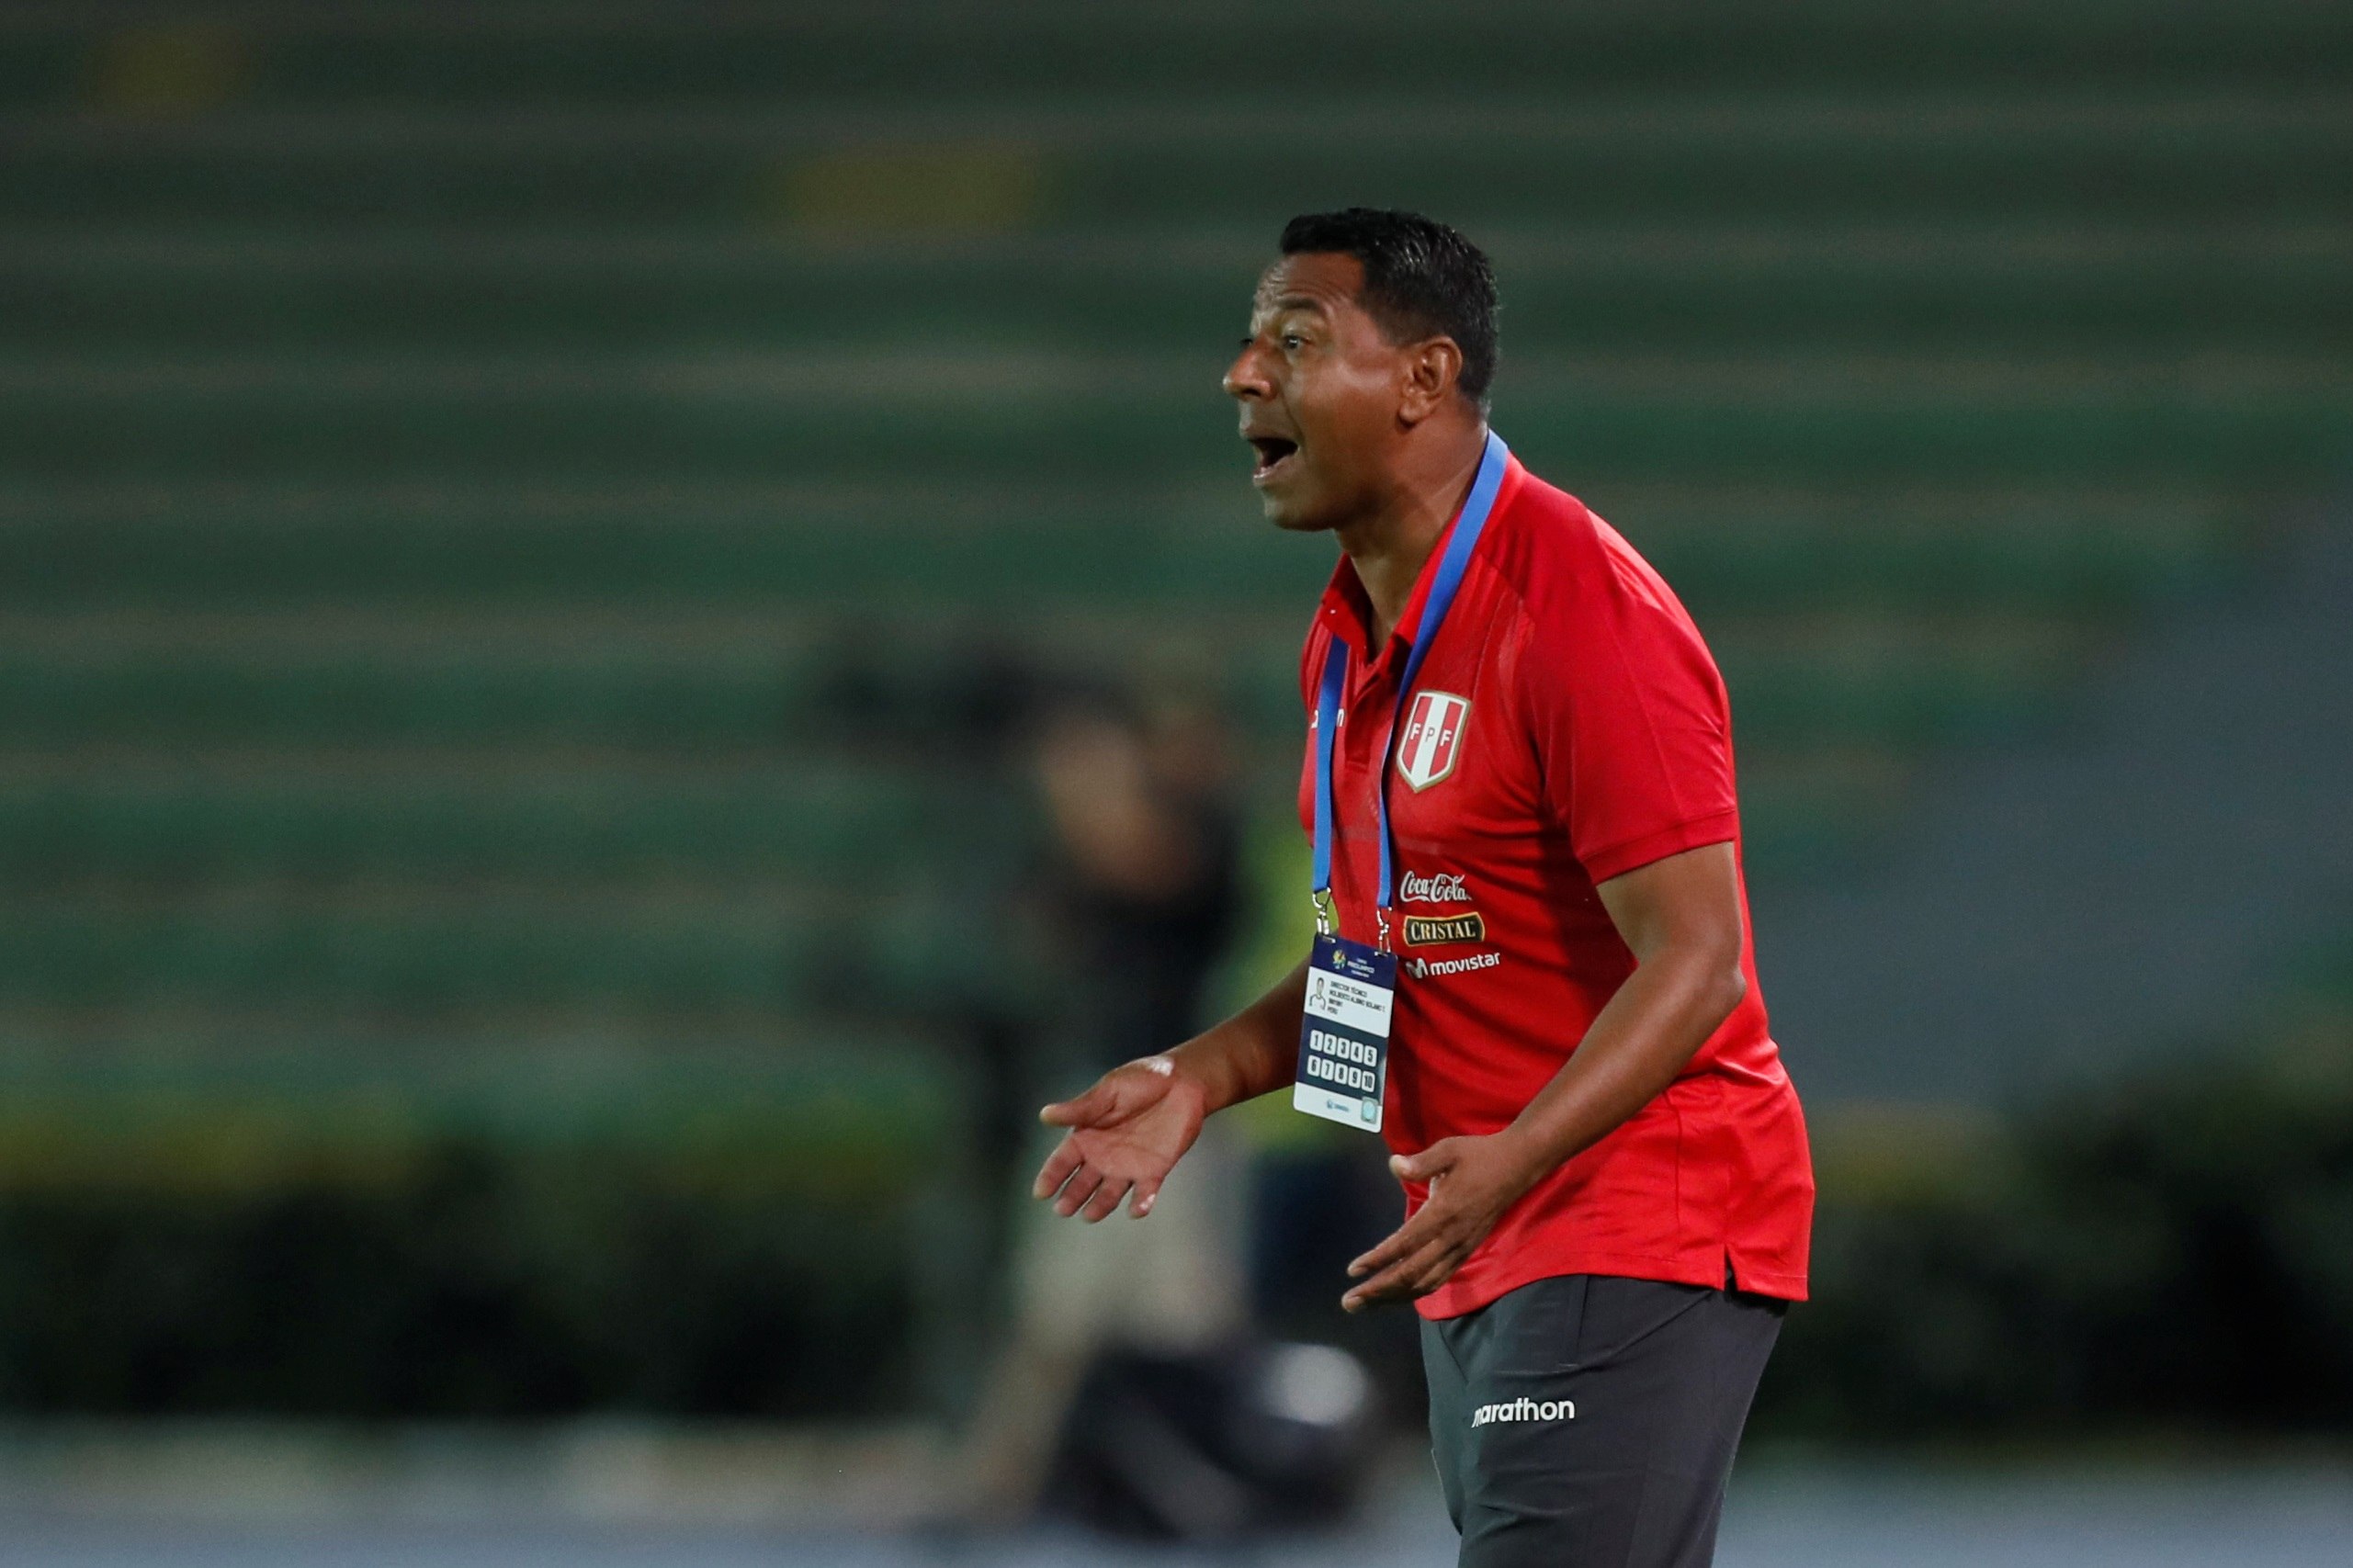 El entrenador de Perú Nolberto Solano no se ha cumplido con las restricciones que hay en su país por el coronavirus. (Foto Prensa Libre: EFE)